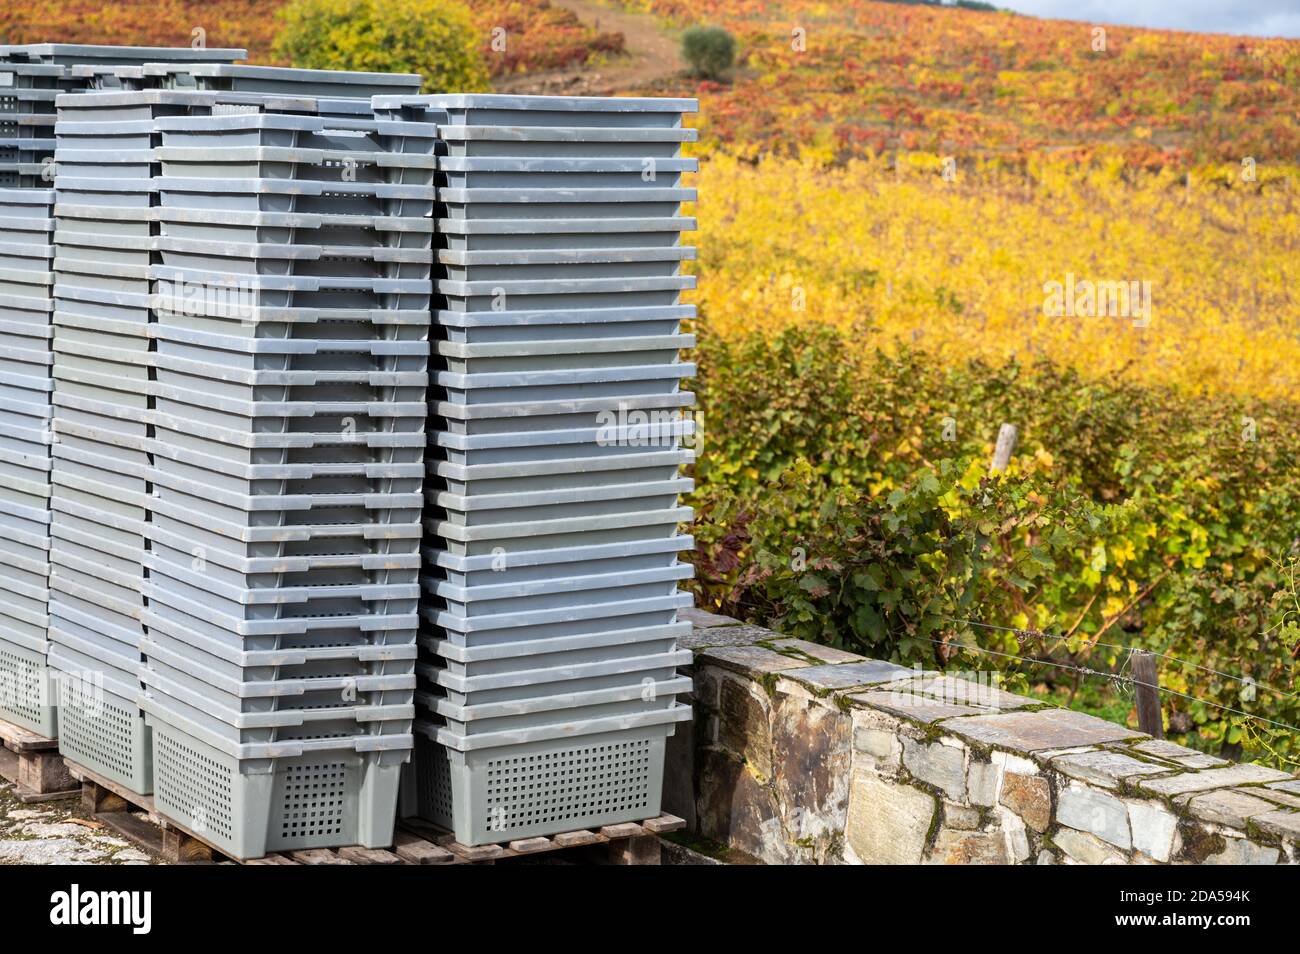 Vinification dans la plus ancienne région viticole du monde, dans la vallée du Douro, au Portugal, boîtes en plastique gris pour la récolte des raisins, production de rouge, blanc et por Banque D'Images